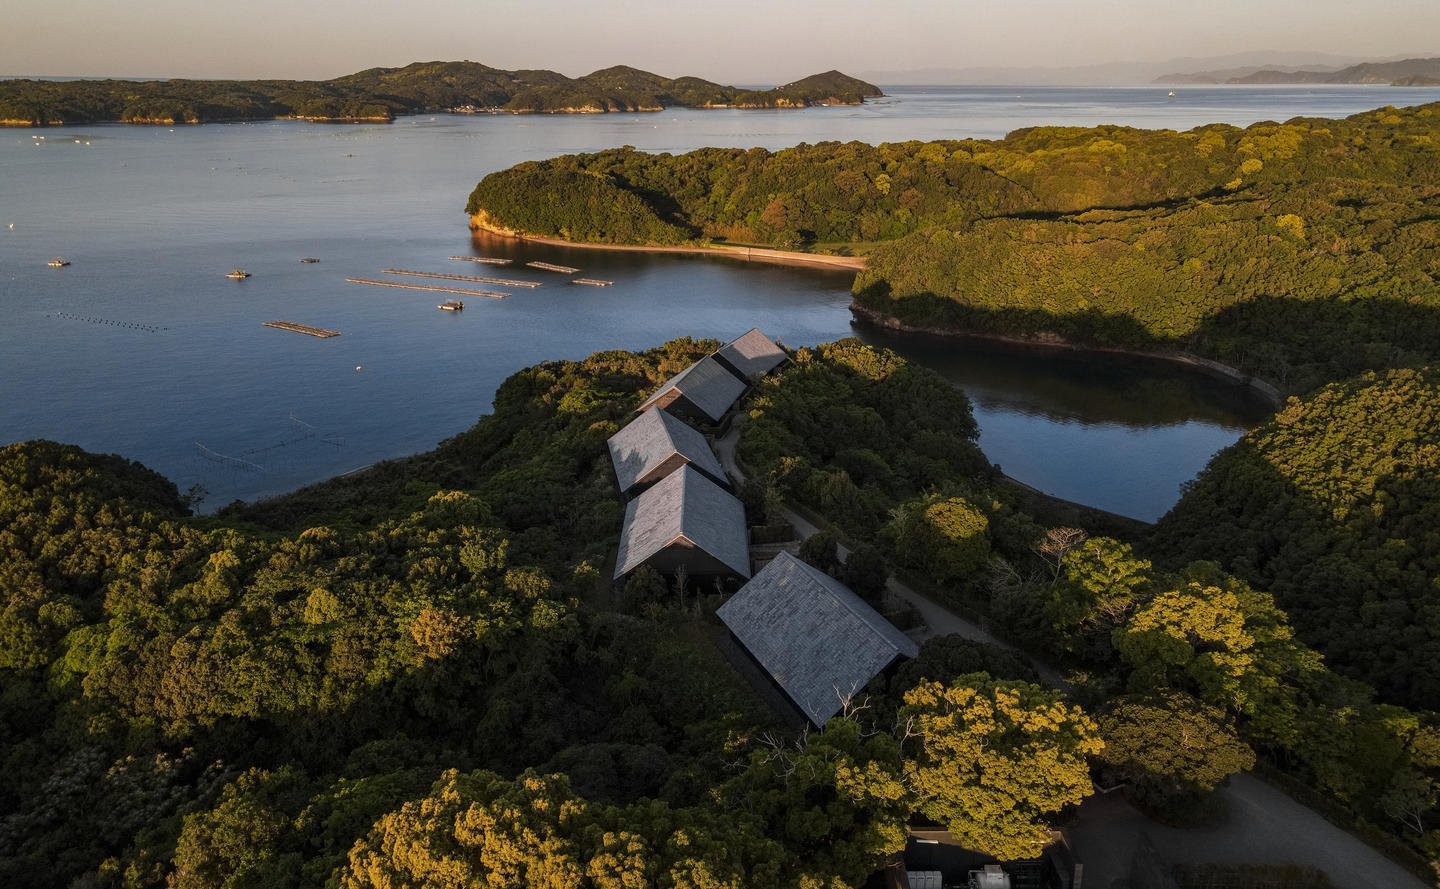 Amanemu, Japan - Resort, drone shot